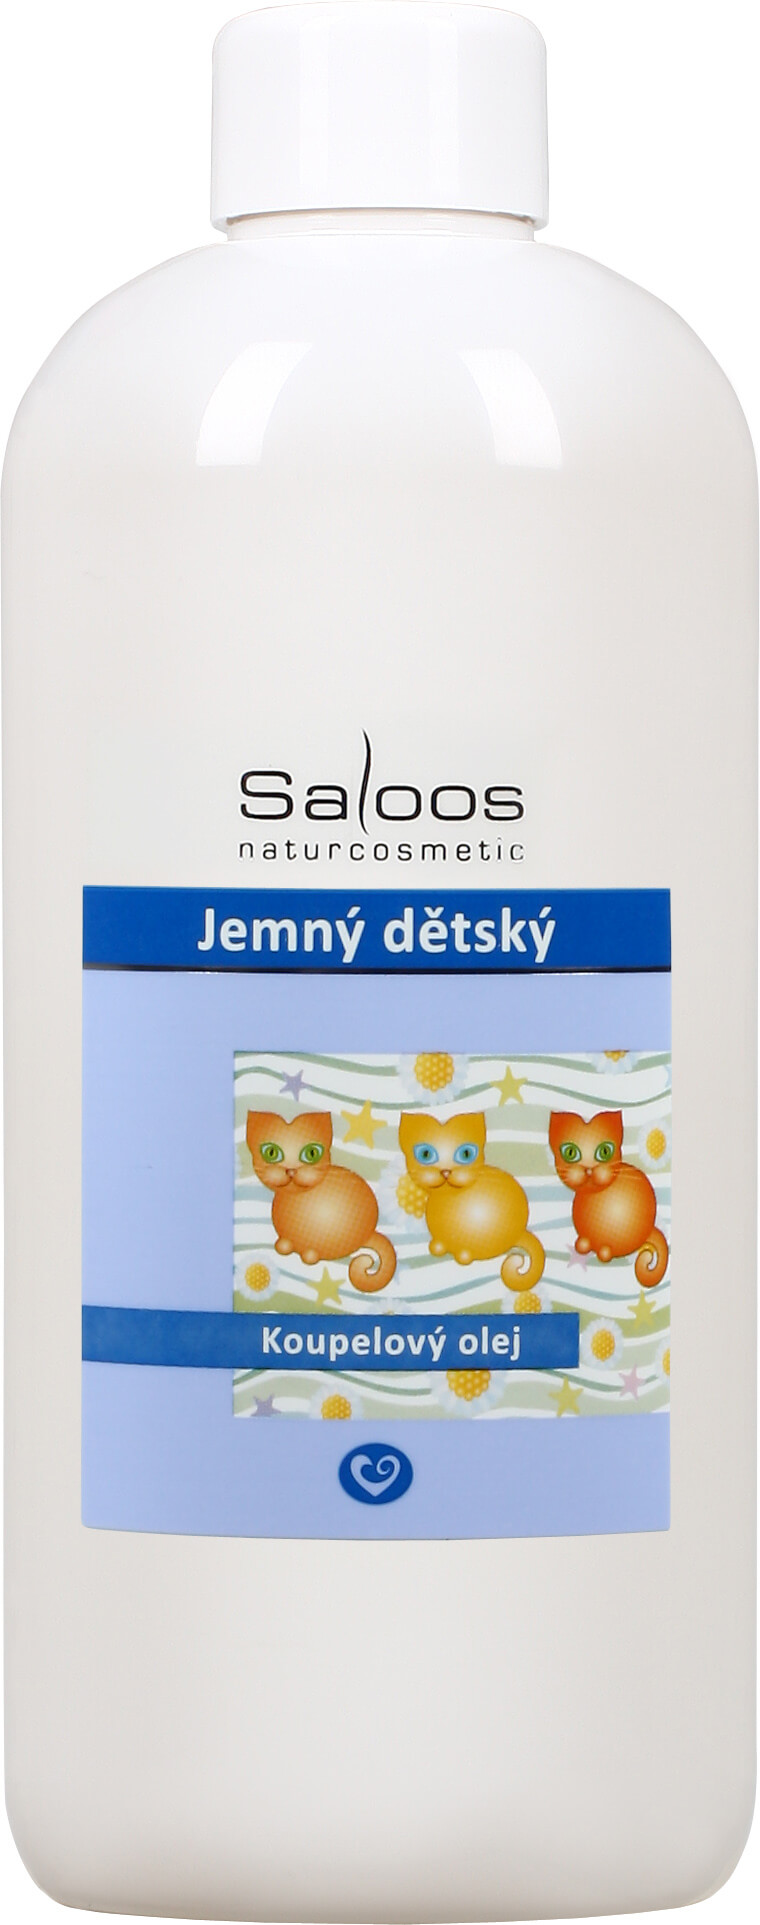 Zobrazit detail výrobku Saloos Koupelový olej - Jemný dětský 250 ml + 2 měsíce na vrácení zboží